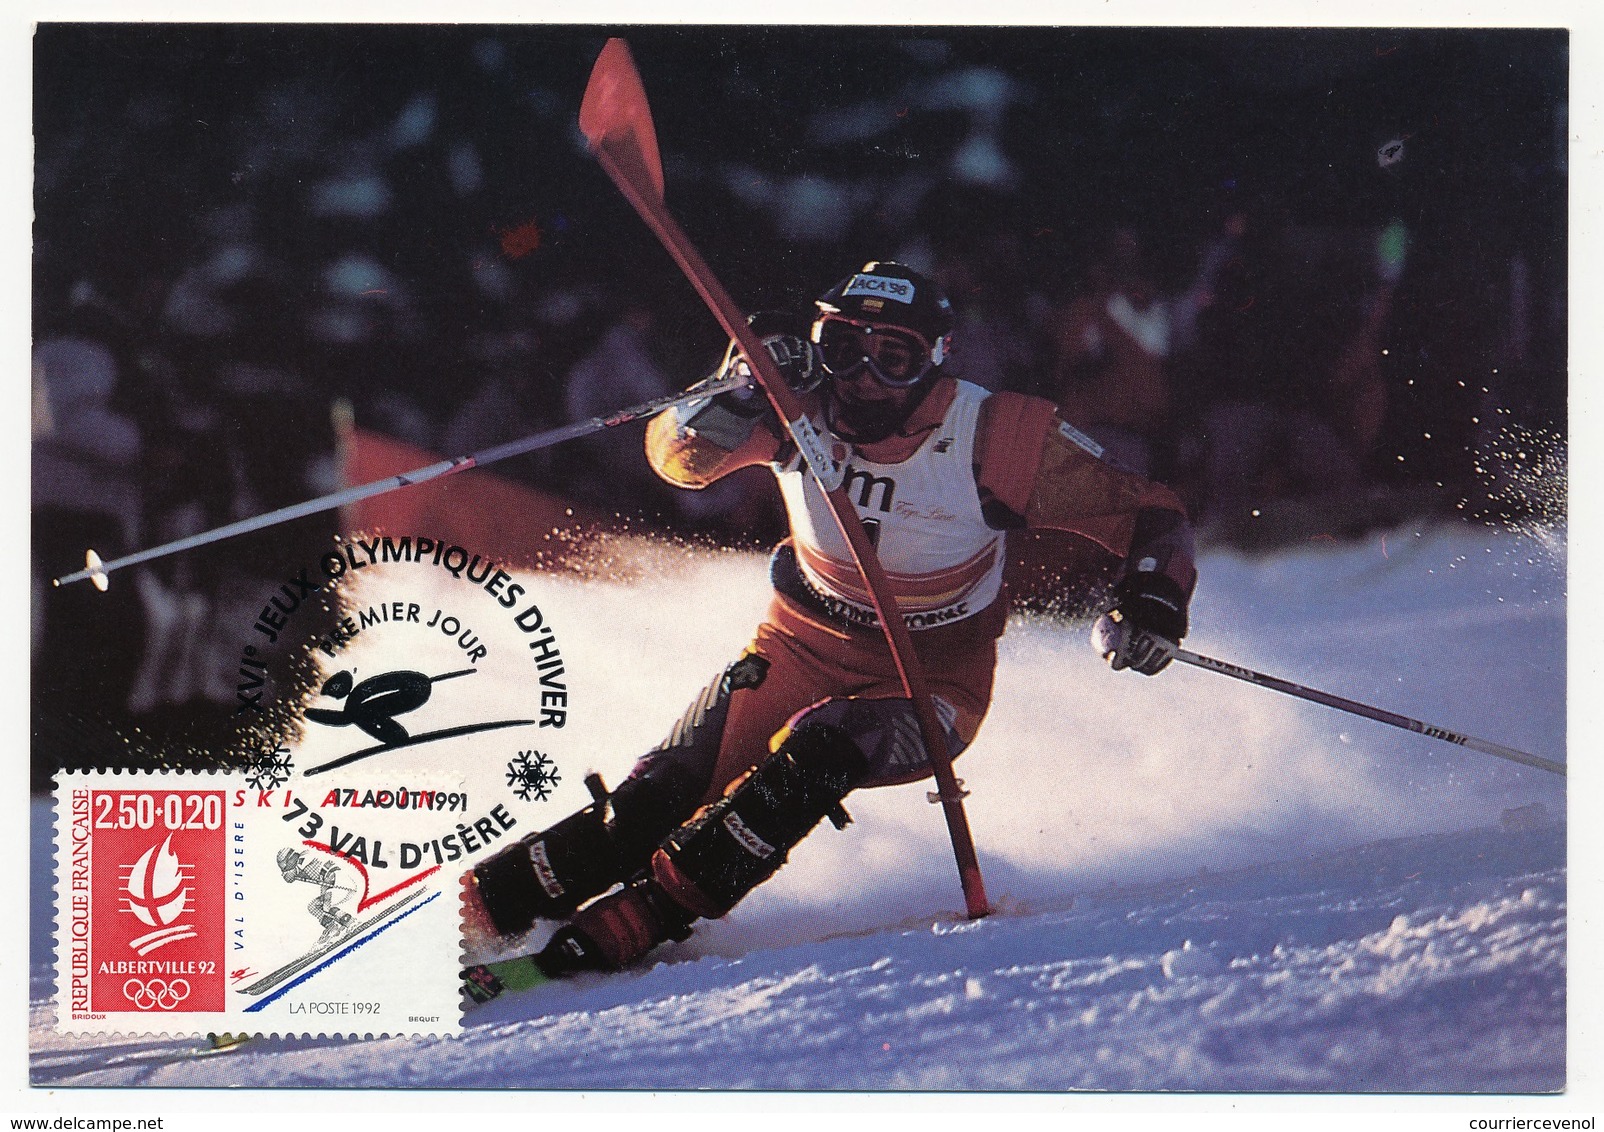 FRANCE - 10 cartes maximum - Jeux olympiques d'Albertville 1992 - Très belle série